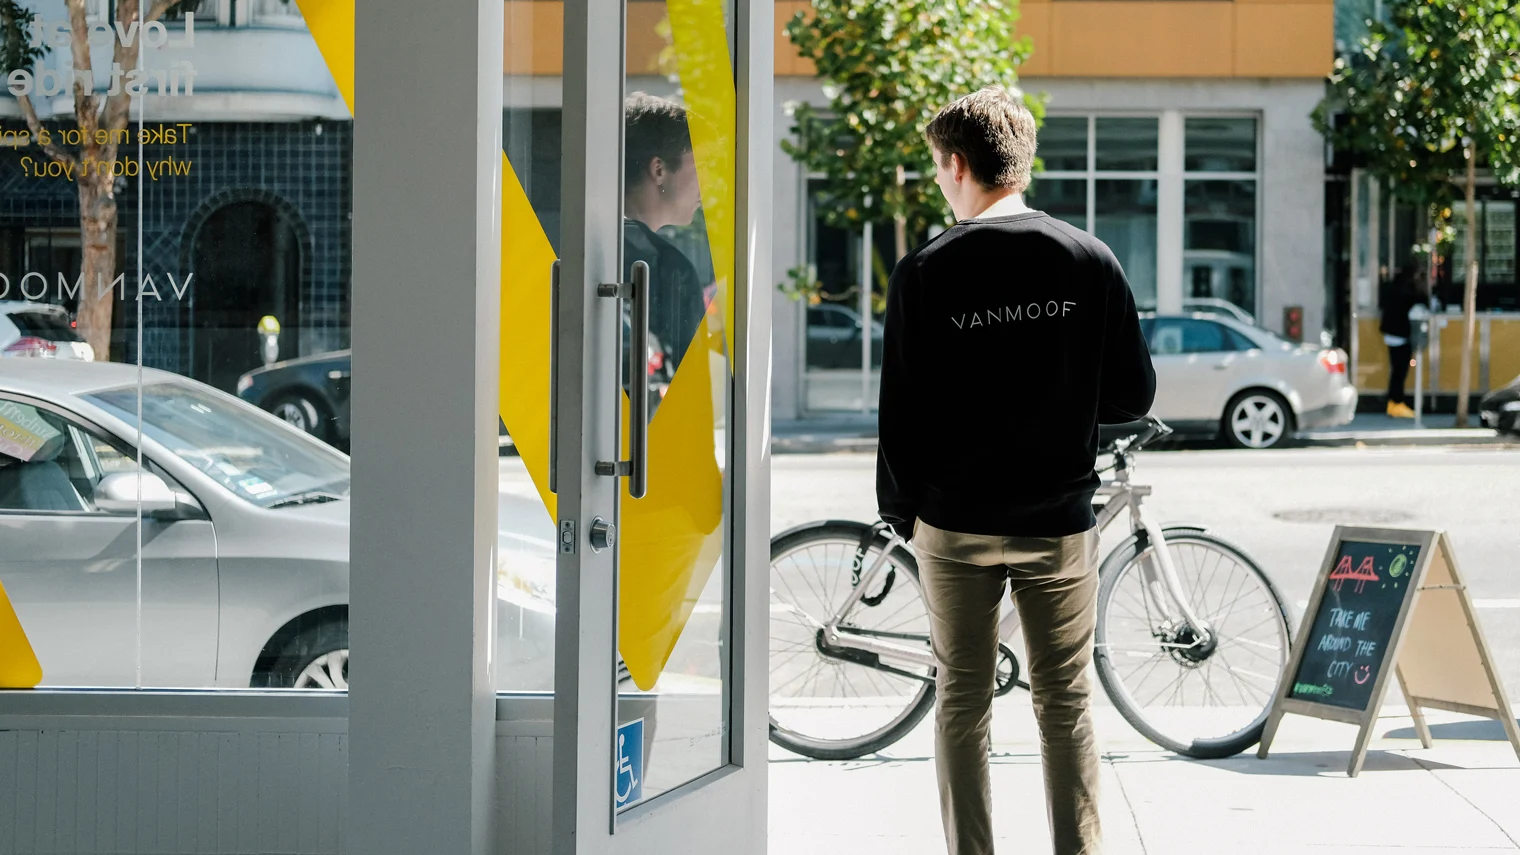 Design Offices präsentiert ab dem 27. Mai 2020 an verschiedenen Standorten in Deutschland Pop-up-Stores von VanMoof, den niederländischen City-Bike-Innovator. New Work trifft New Mobility. 
